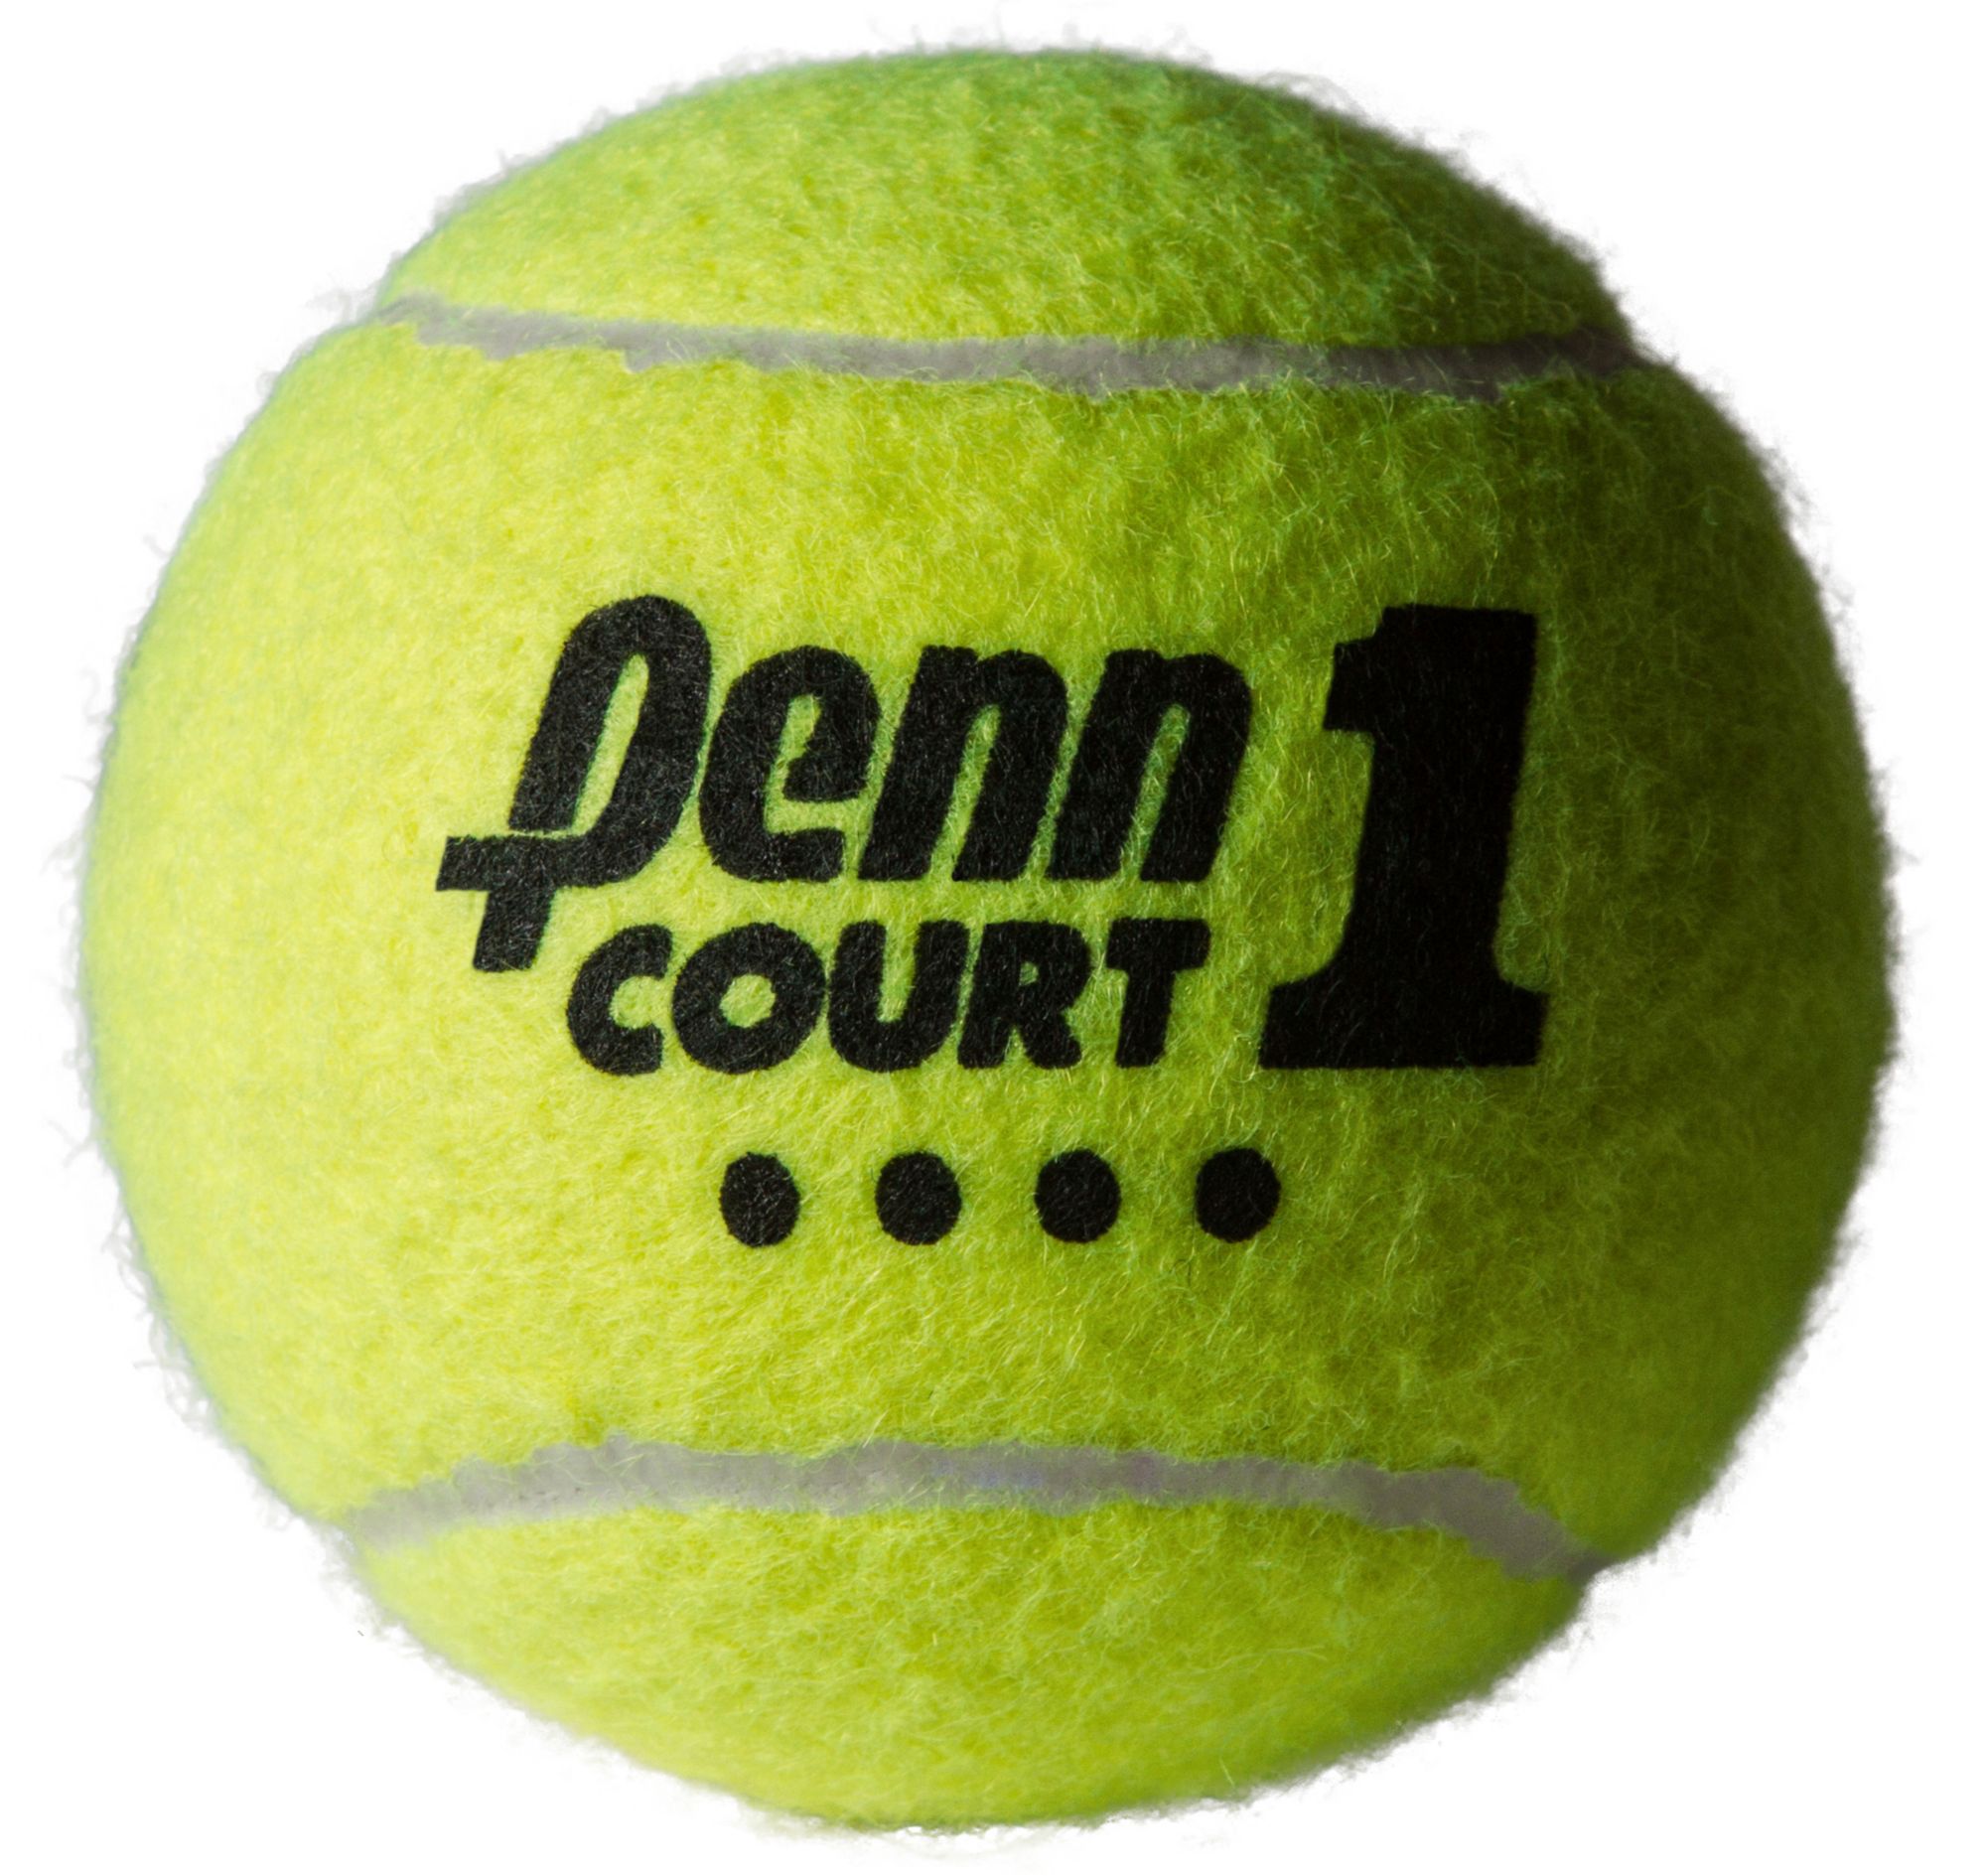 Penn Court 1 Tennis Balls - 3pk